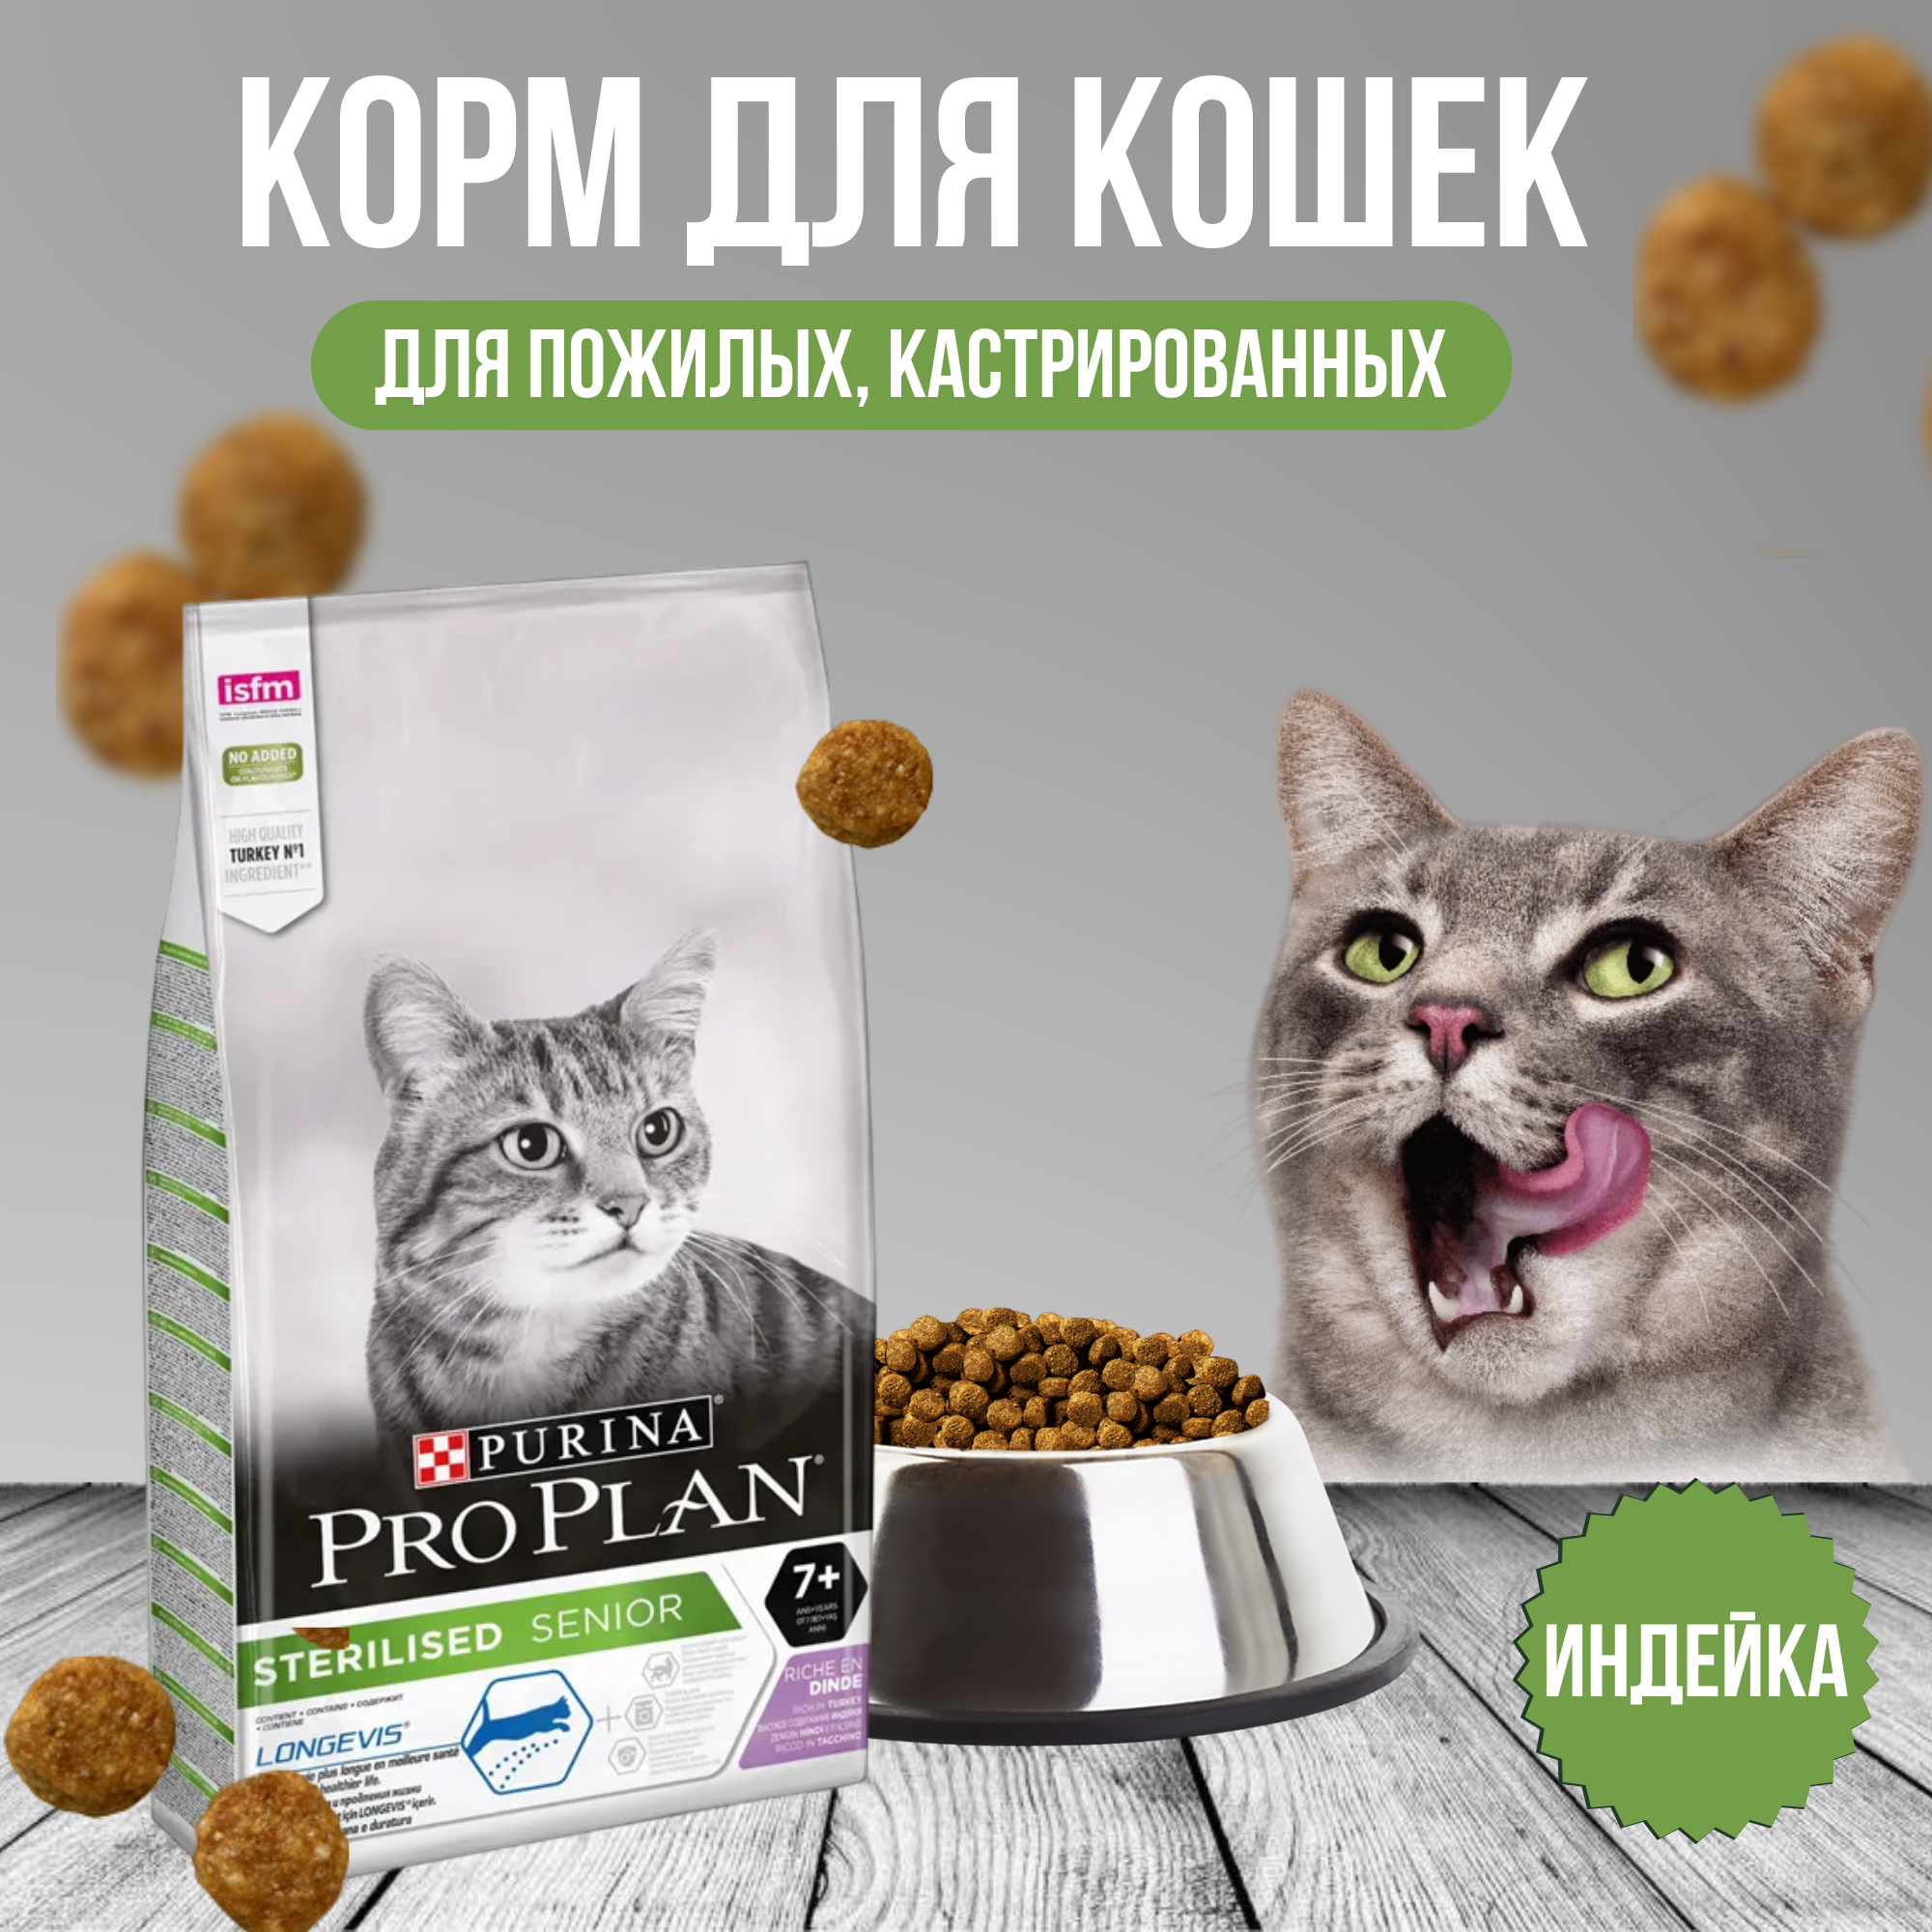 Корм для кошек Pro Plan - фото №7